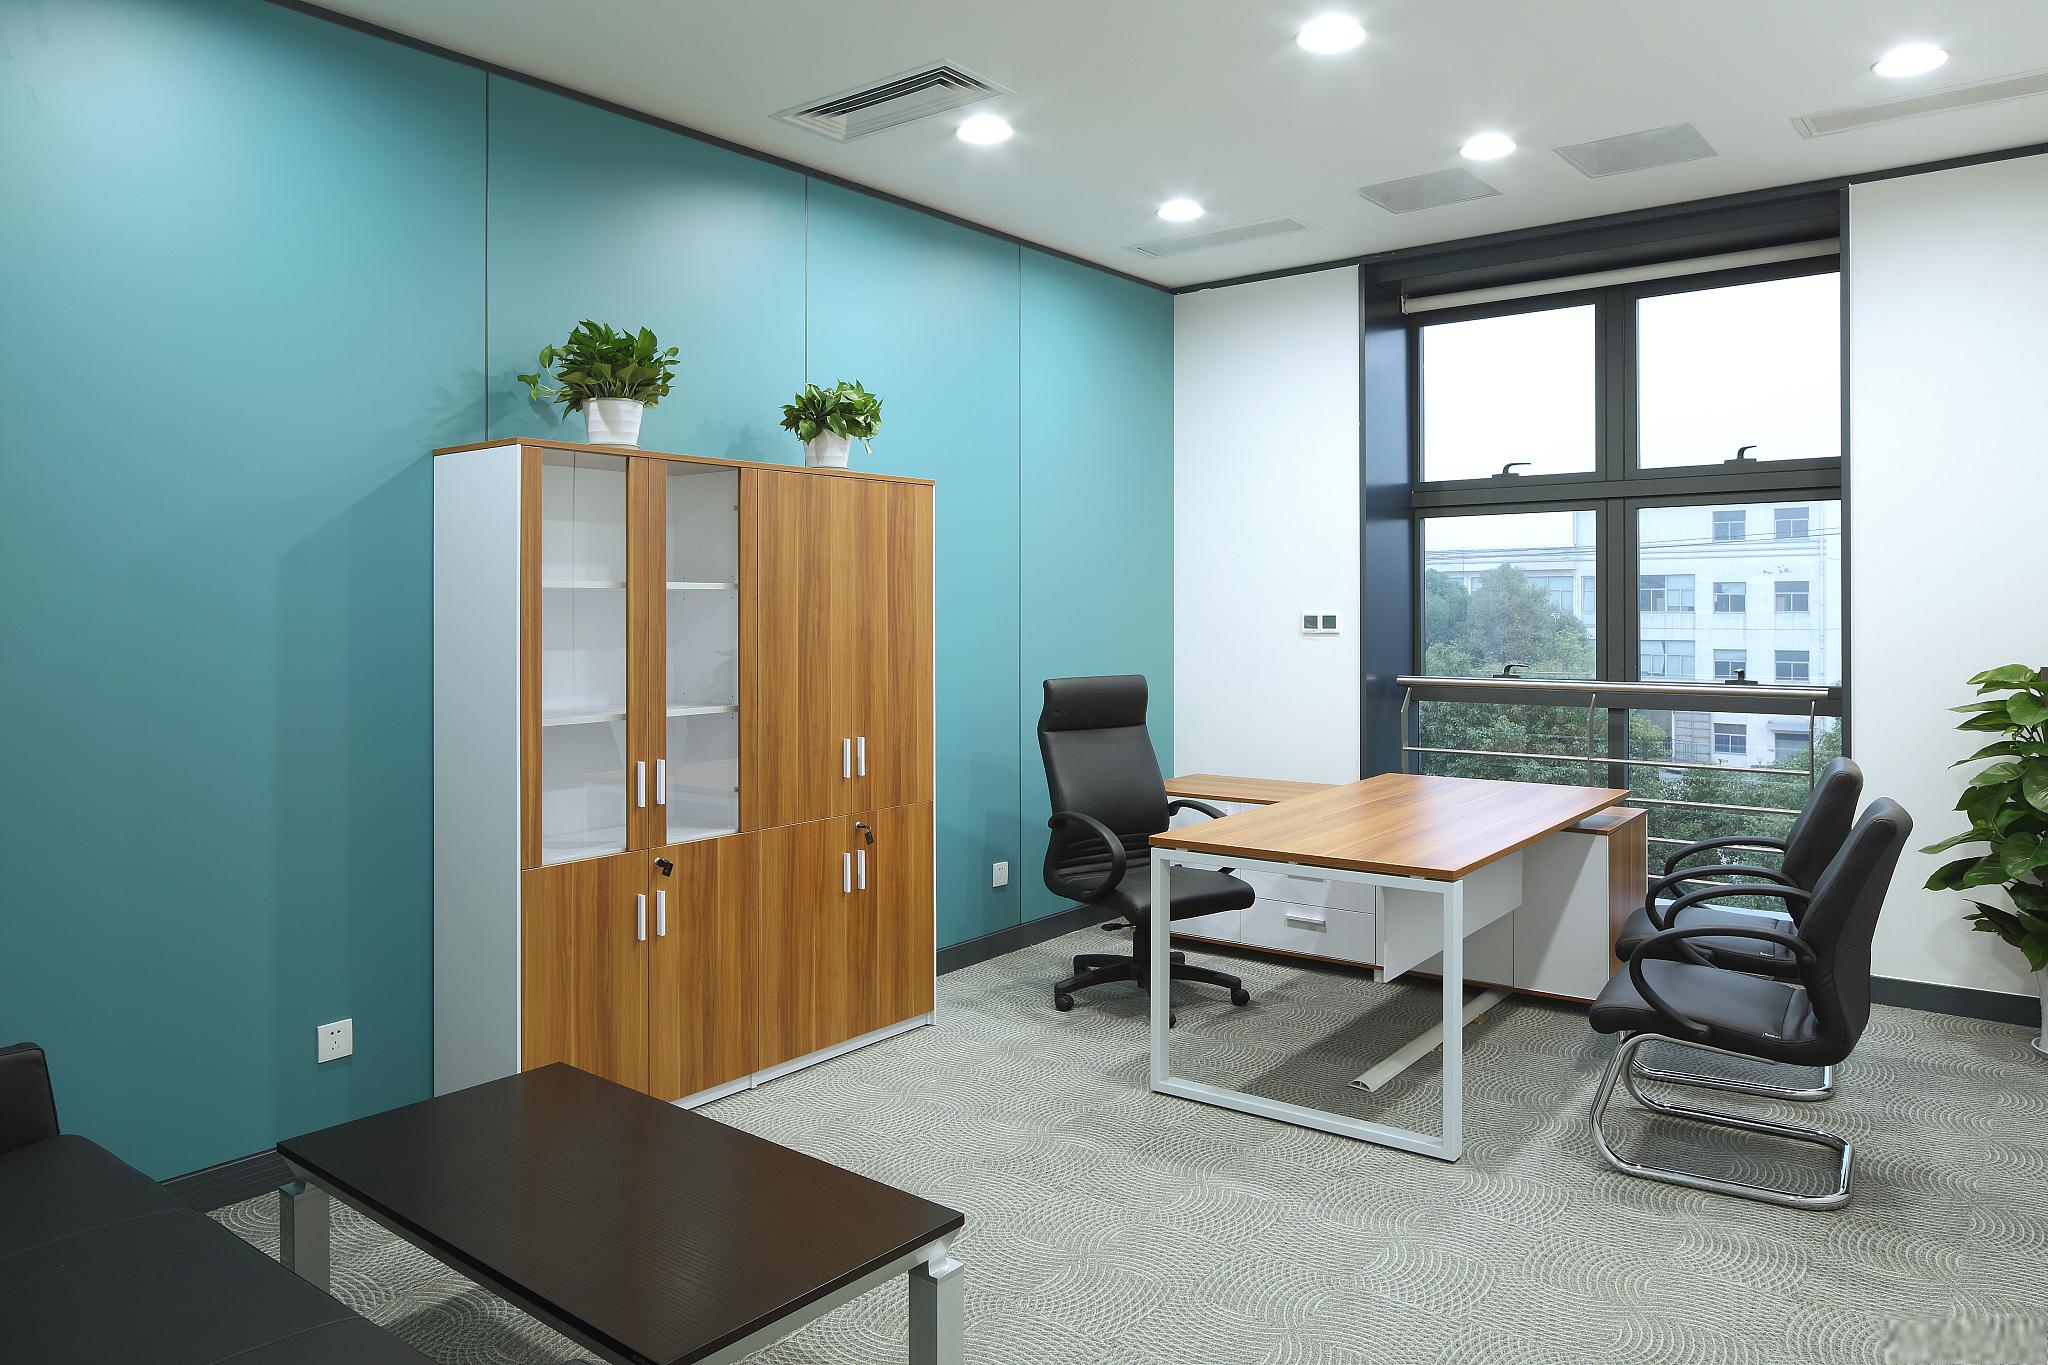 以下是小编的一些建议,帮助你打造一个高效,舒适,具有专业感的办公室